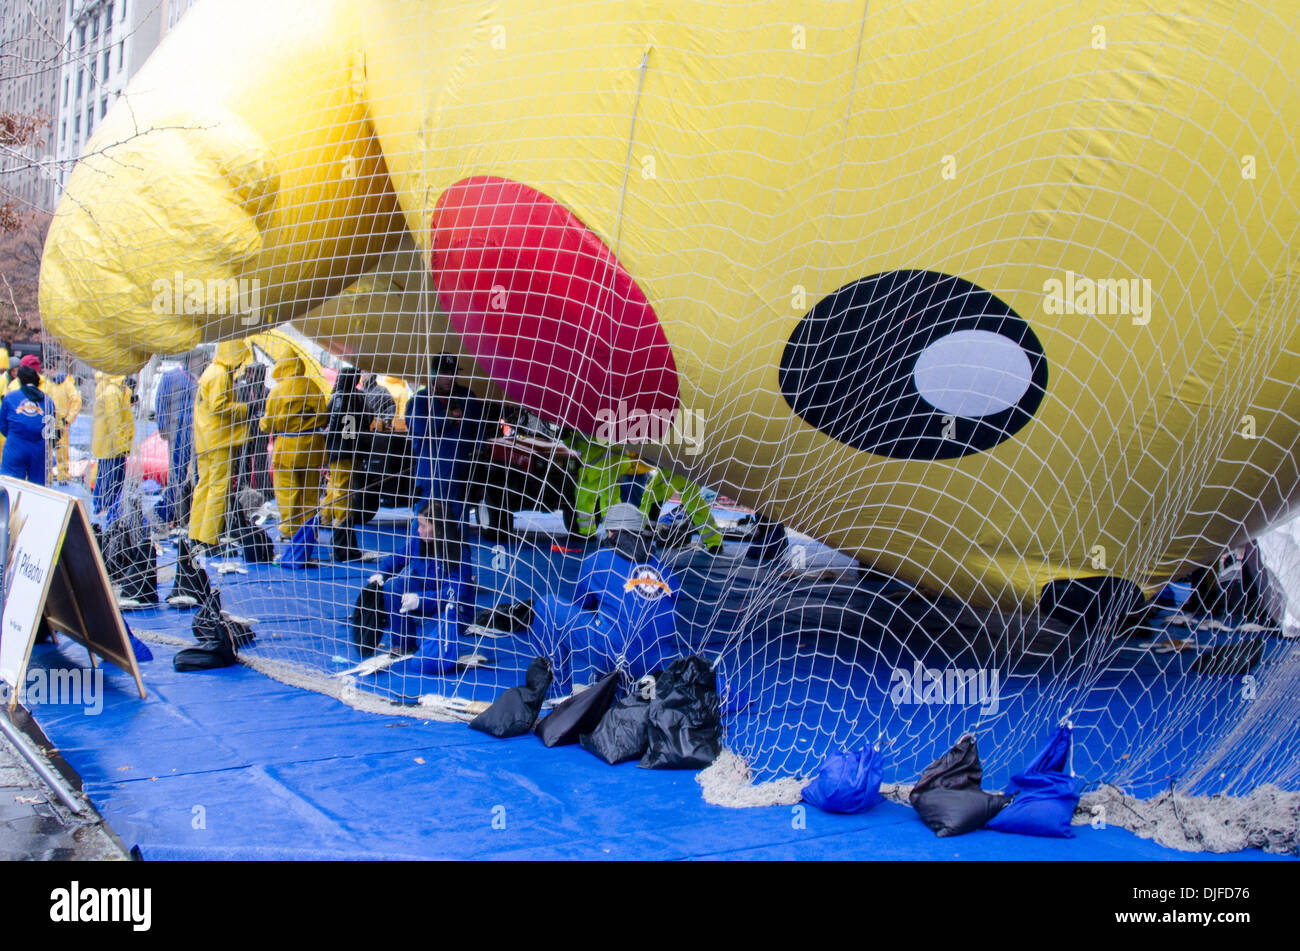 NEW YORK, NY, USA, le 27 novembre 2013. 'Pikachu' étant ballon gonflé sur le jour avant la 87e assemblée annuelle de Macy's Thanksgiving Day Parade. Crédit : Jennifer Booher/Alamy Live News Banque D'Images